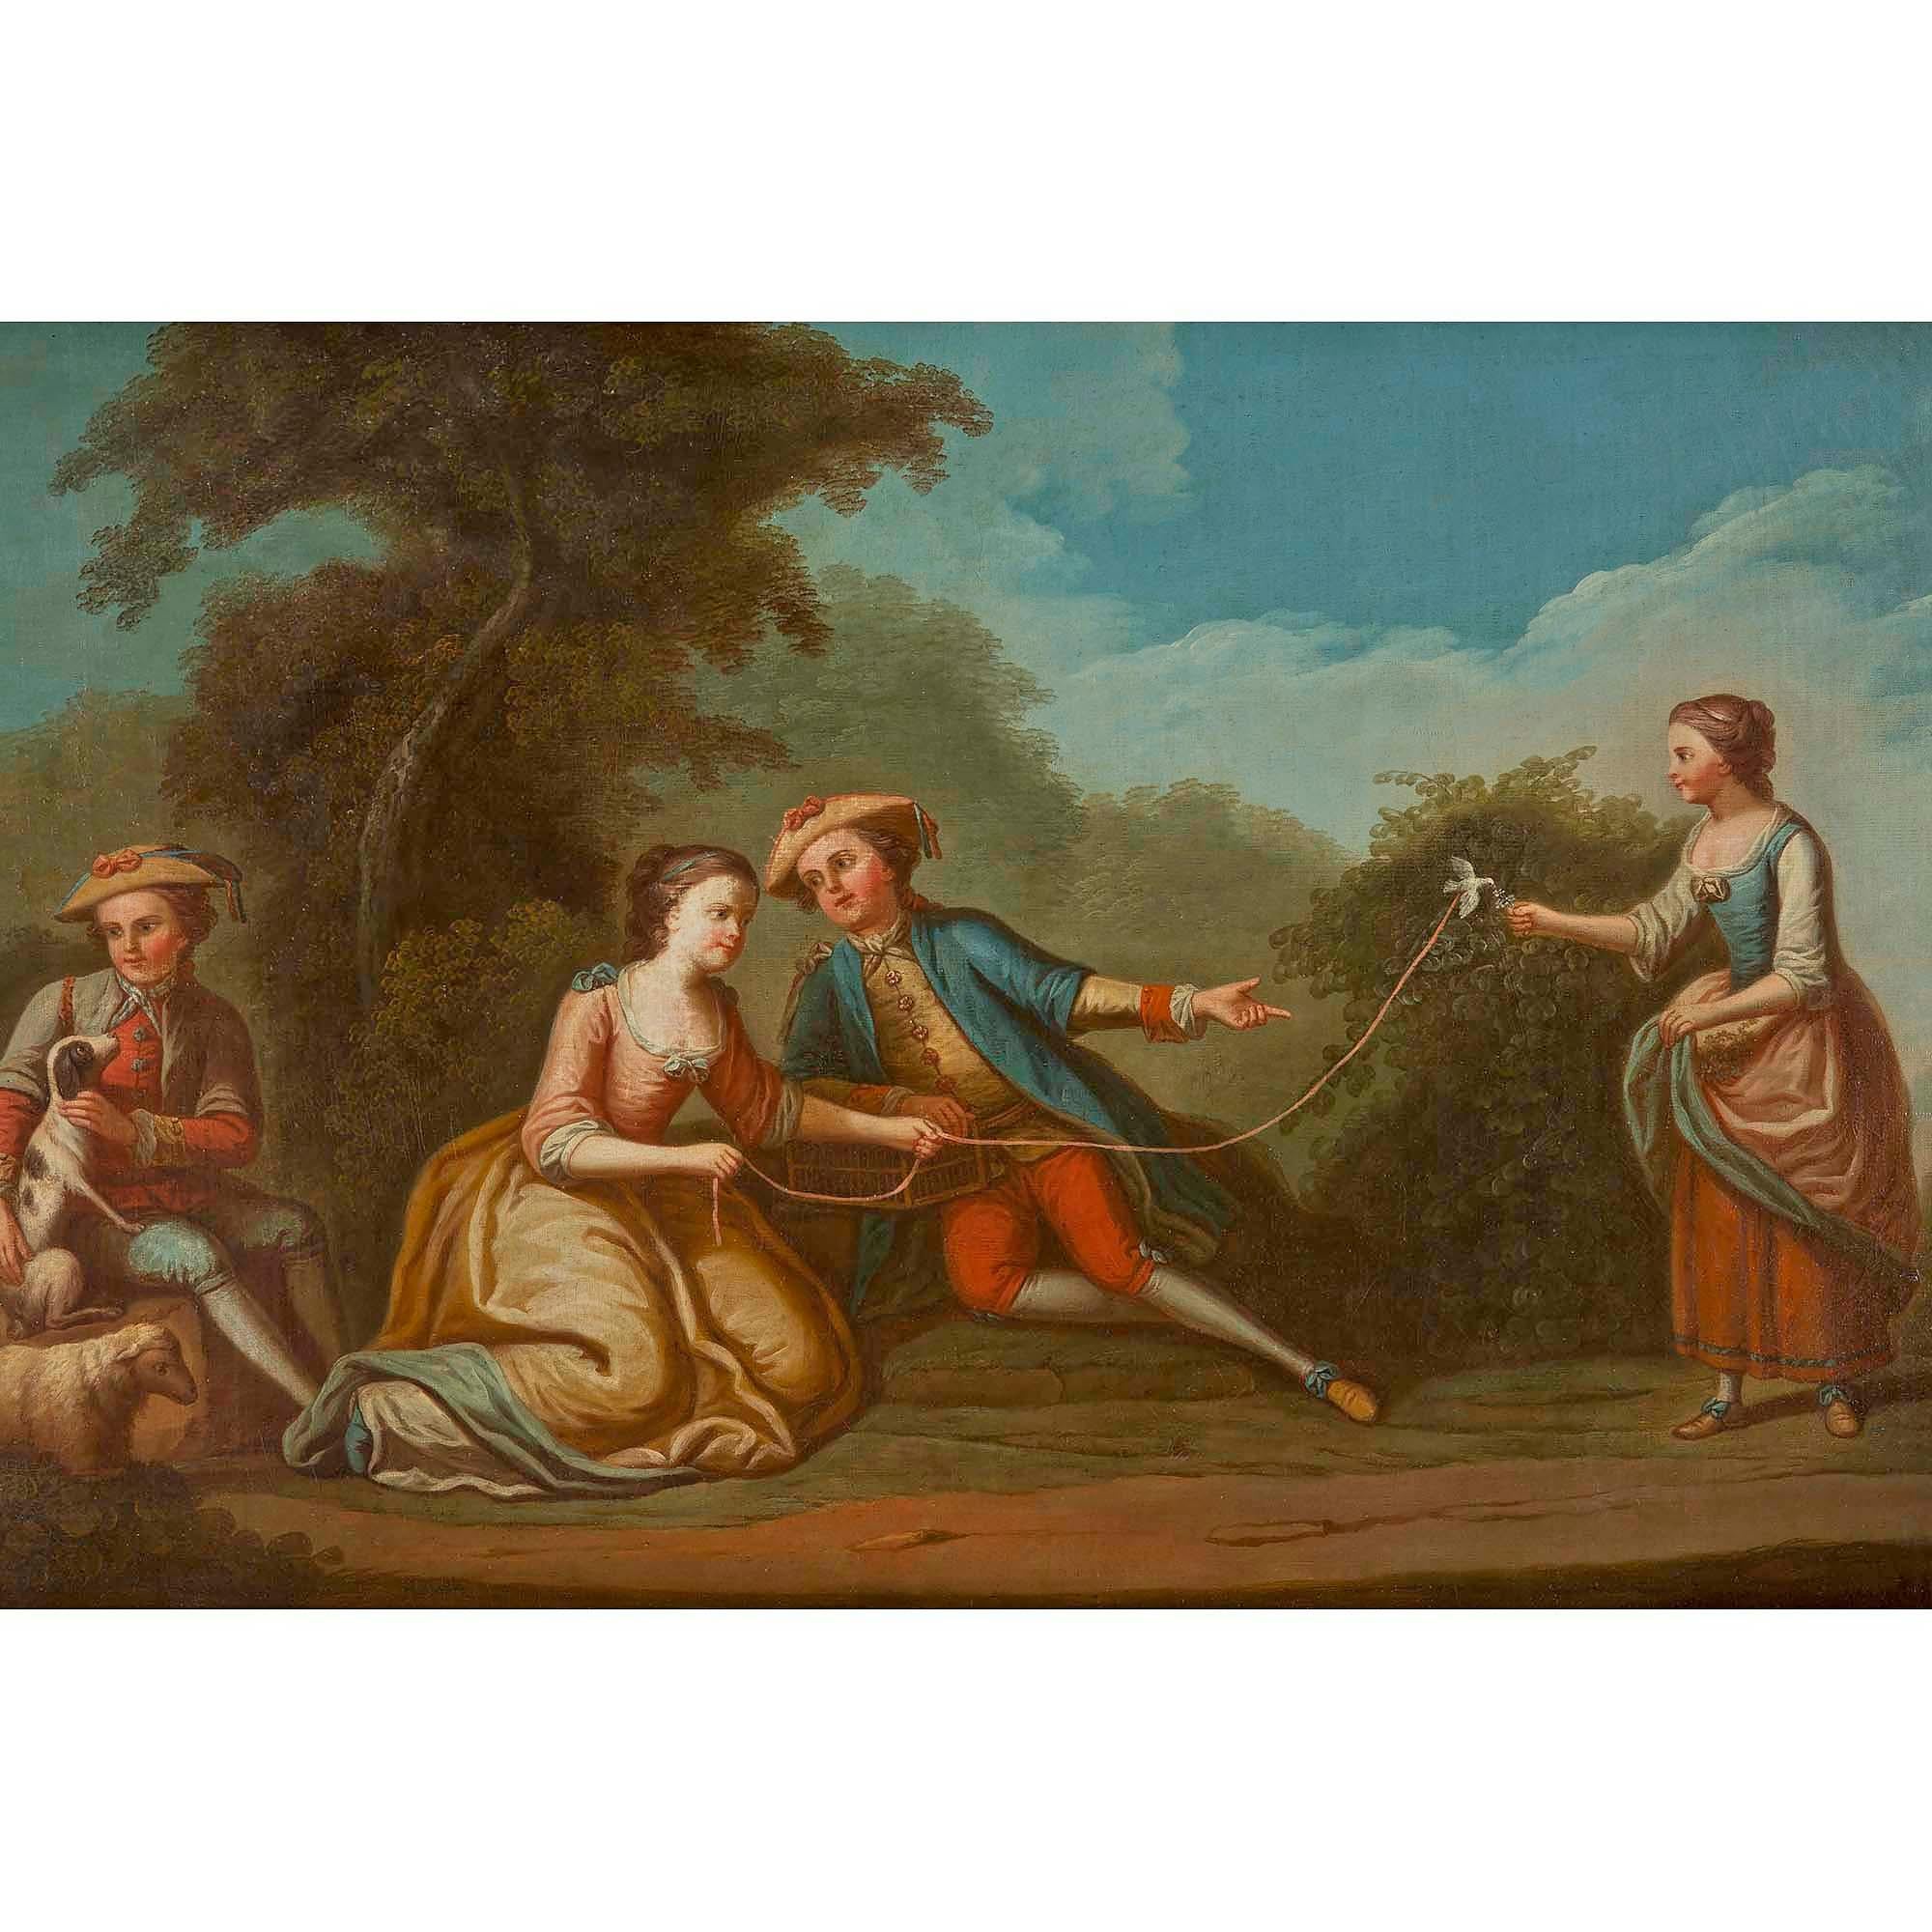 Charmante huile sur toile française du XIXe siècle représentant un groupe de jeunes gens profitant d'un moment de détente à la campagne. Tous en tenue d'époque avec des expressions joyeuses. Un jeune homme est assis et se détend avec son chien et